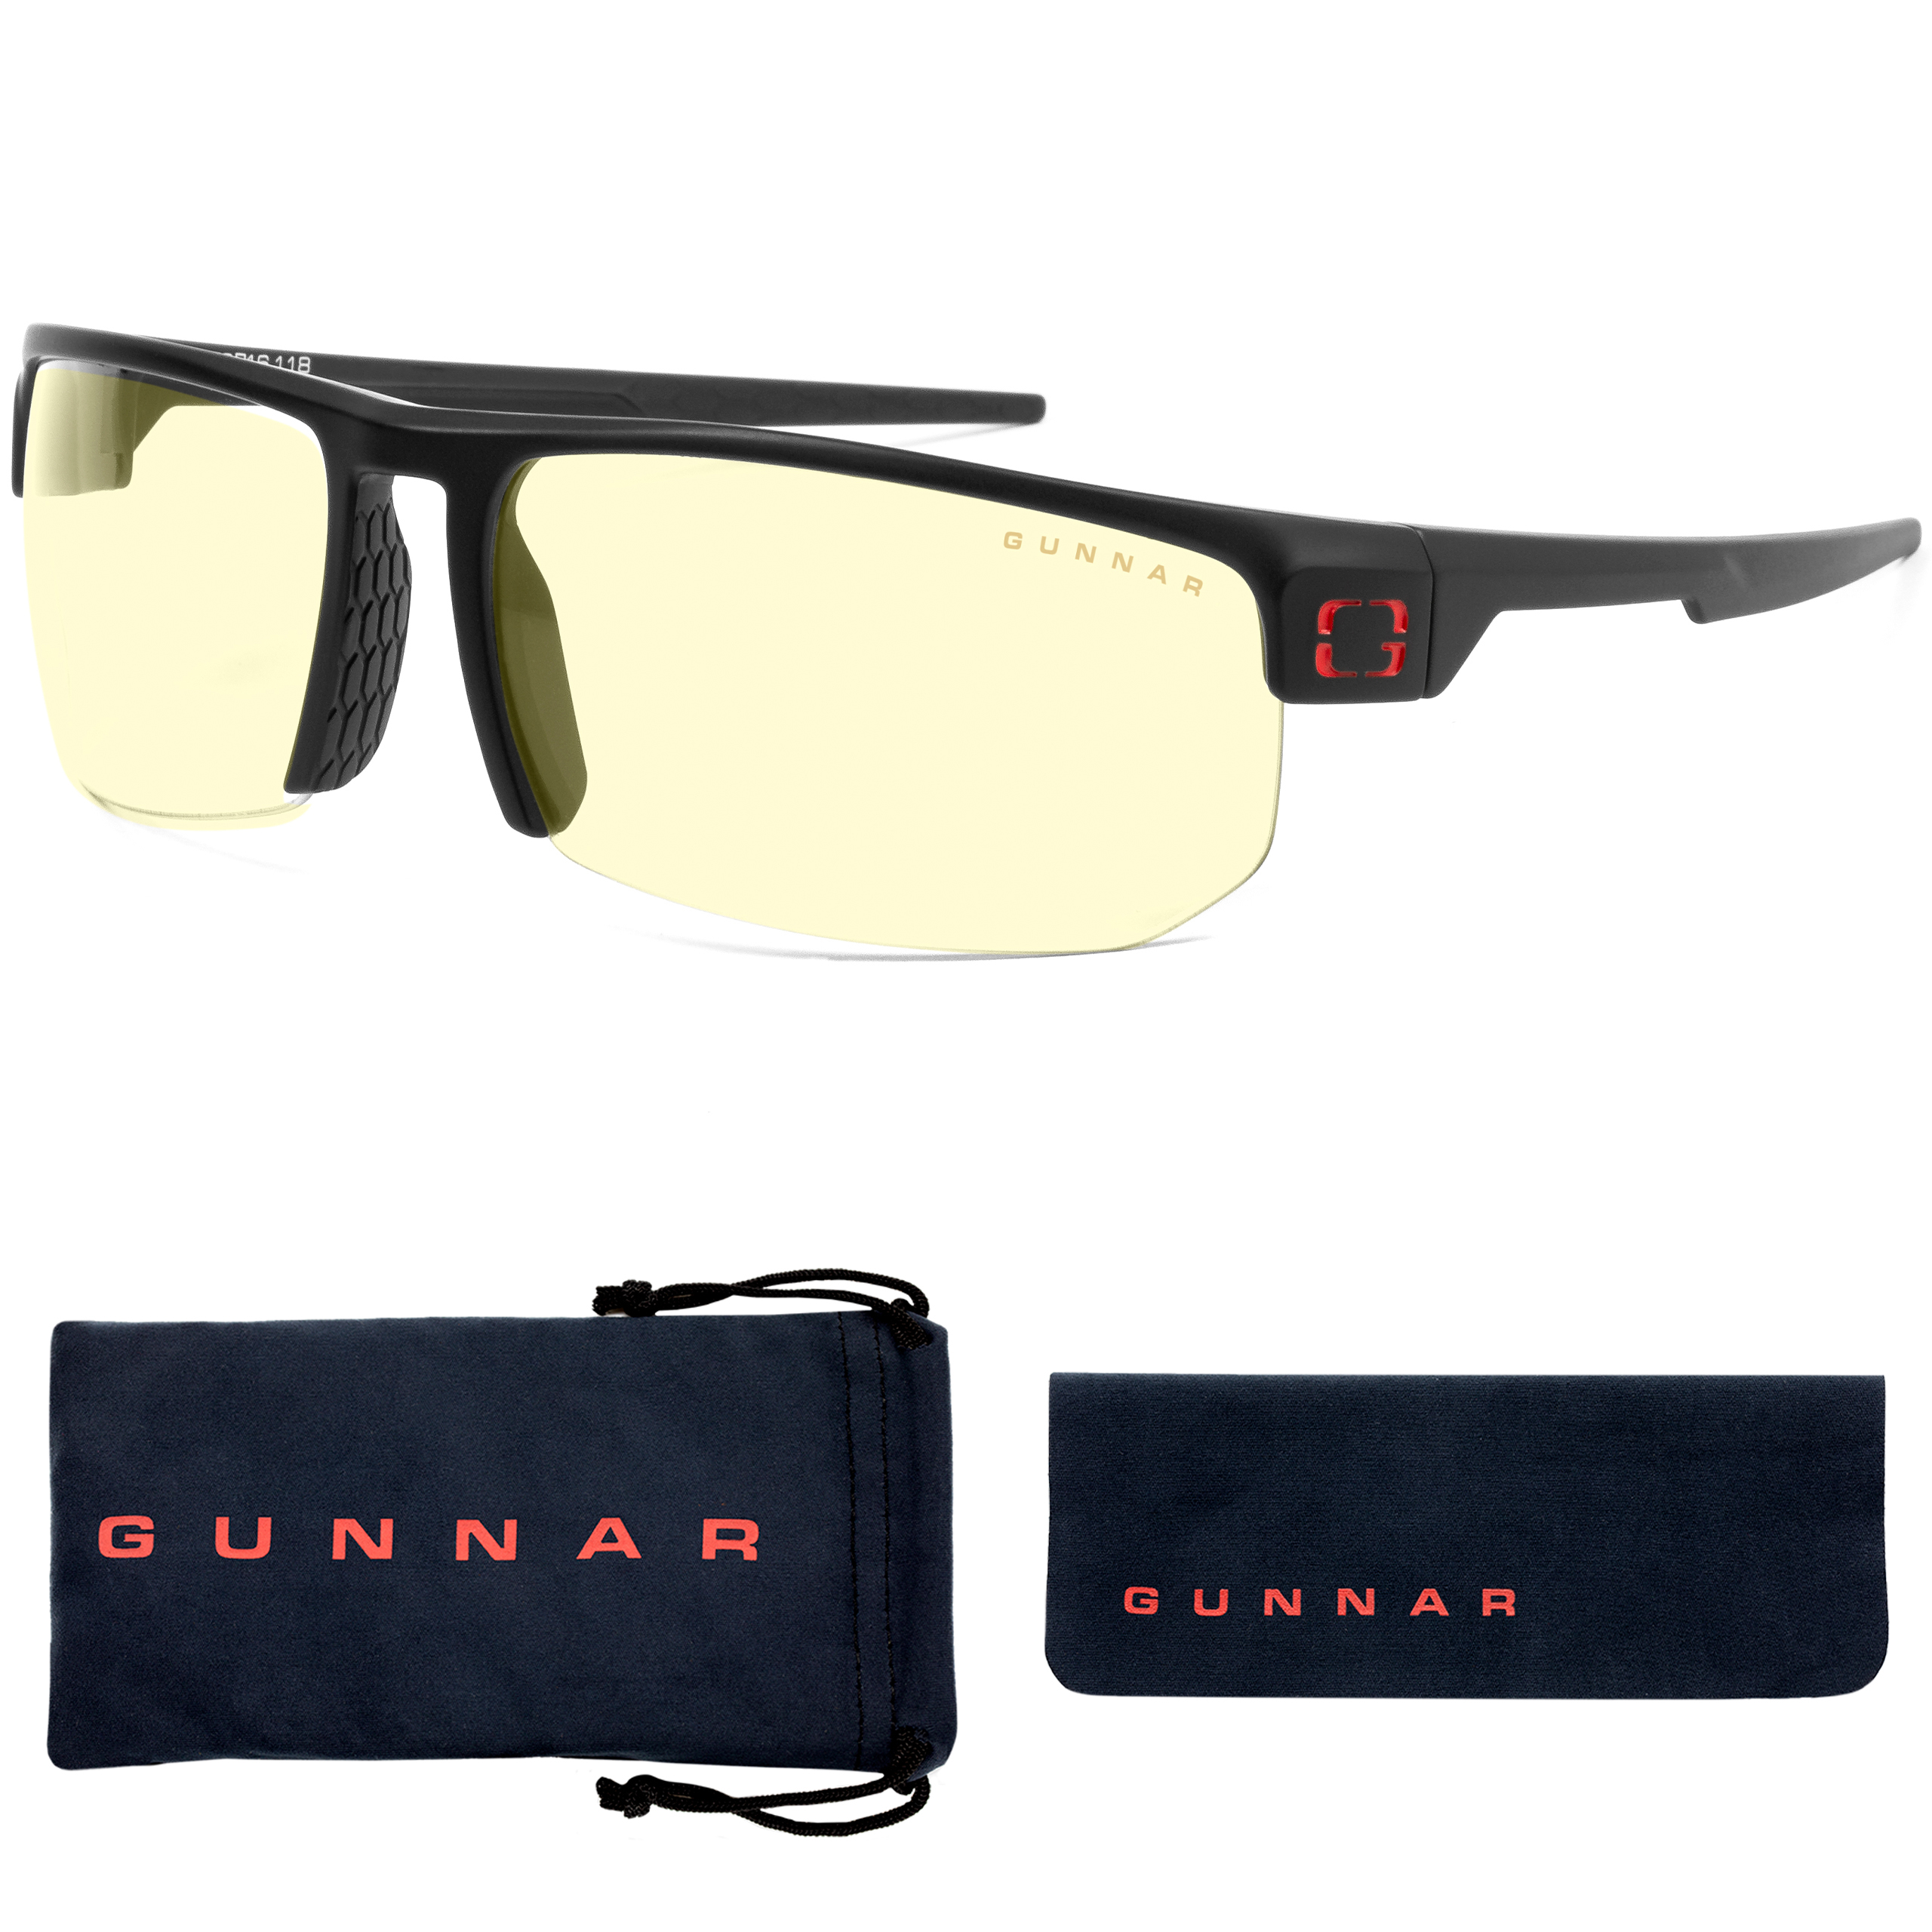 GUNNAR Torpedo, Onyx Gaming Premium, UV-Schutz, Brille Rahmen, Tönung, Blaulichtfilter, Amber